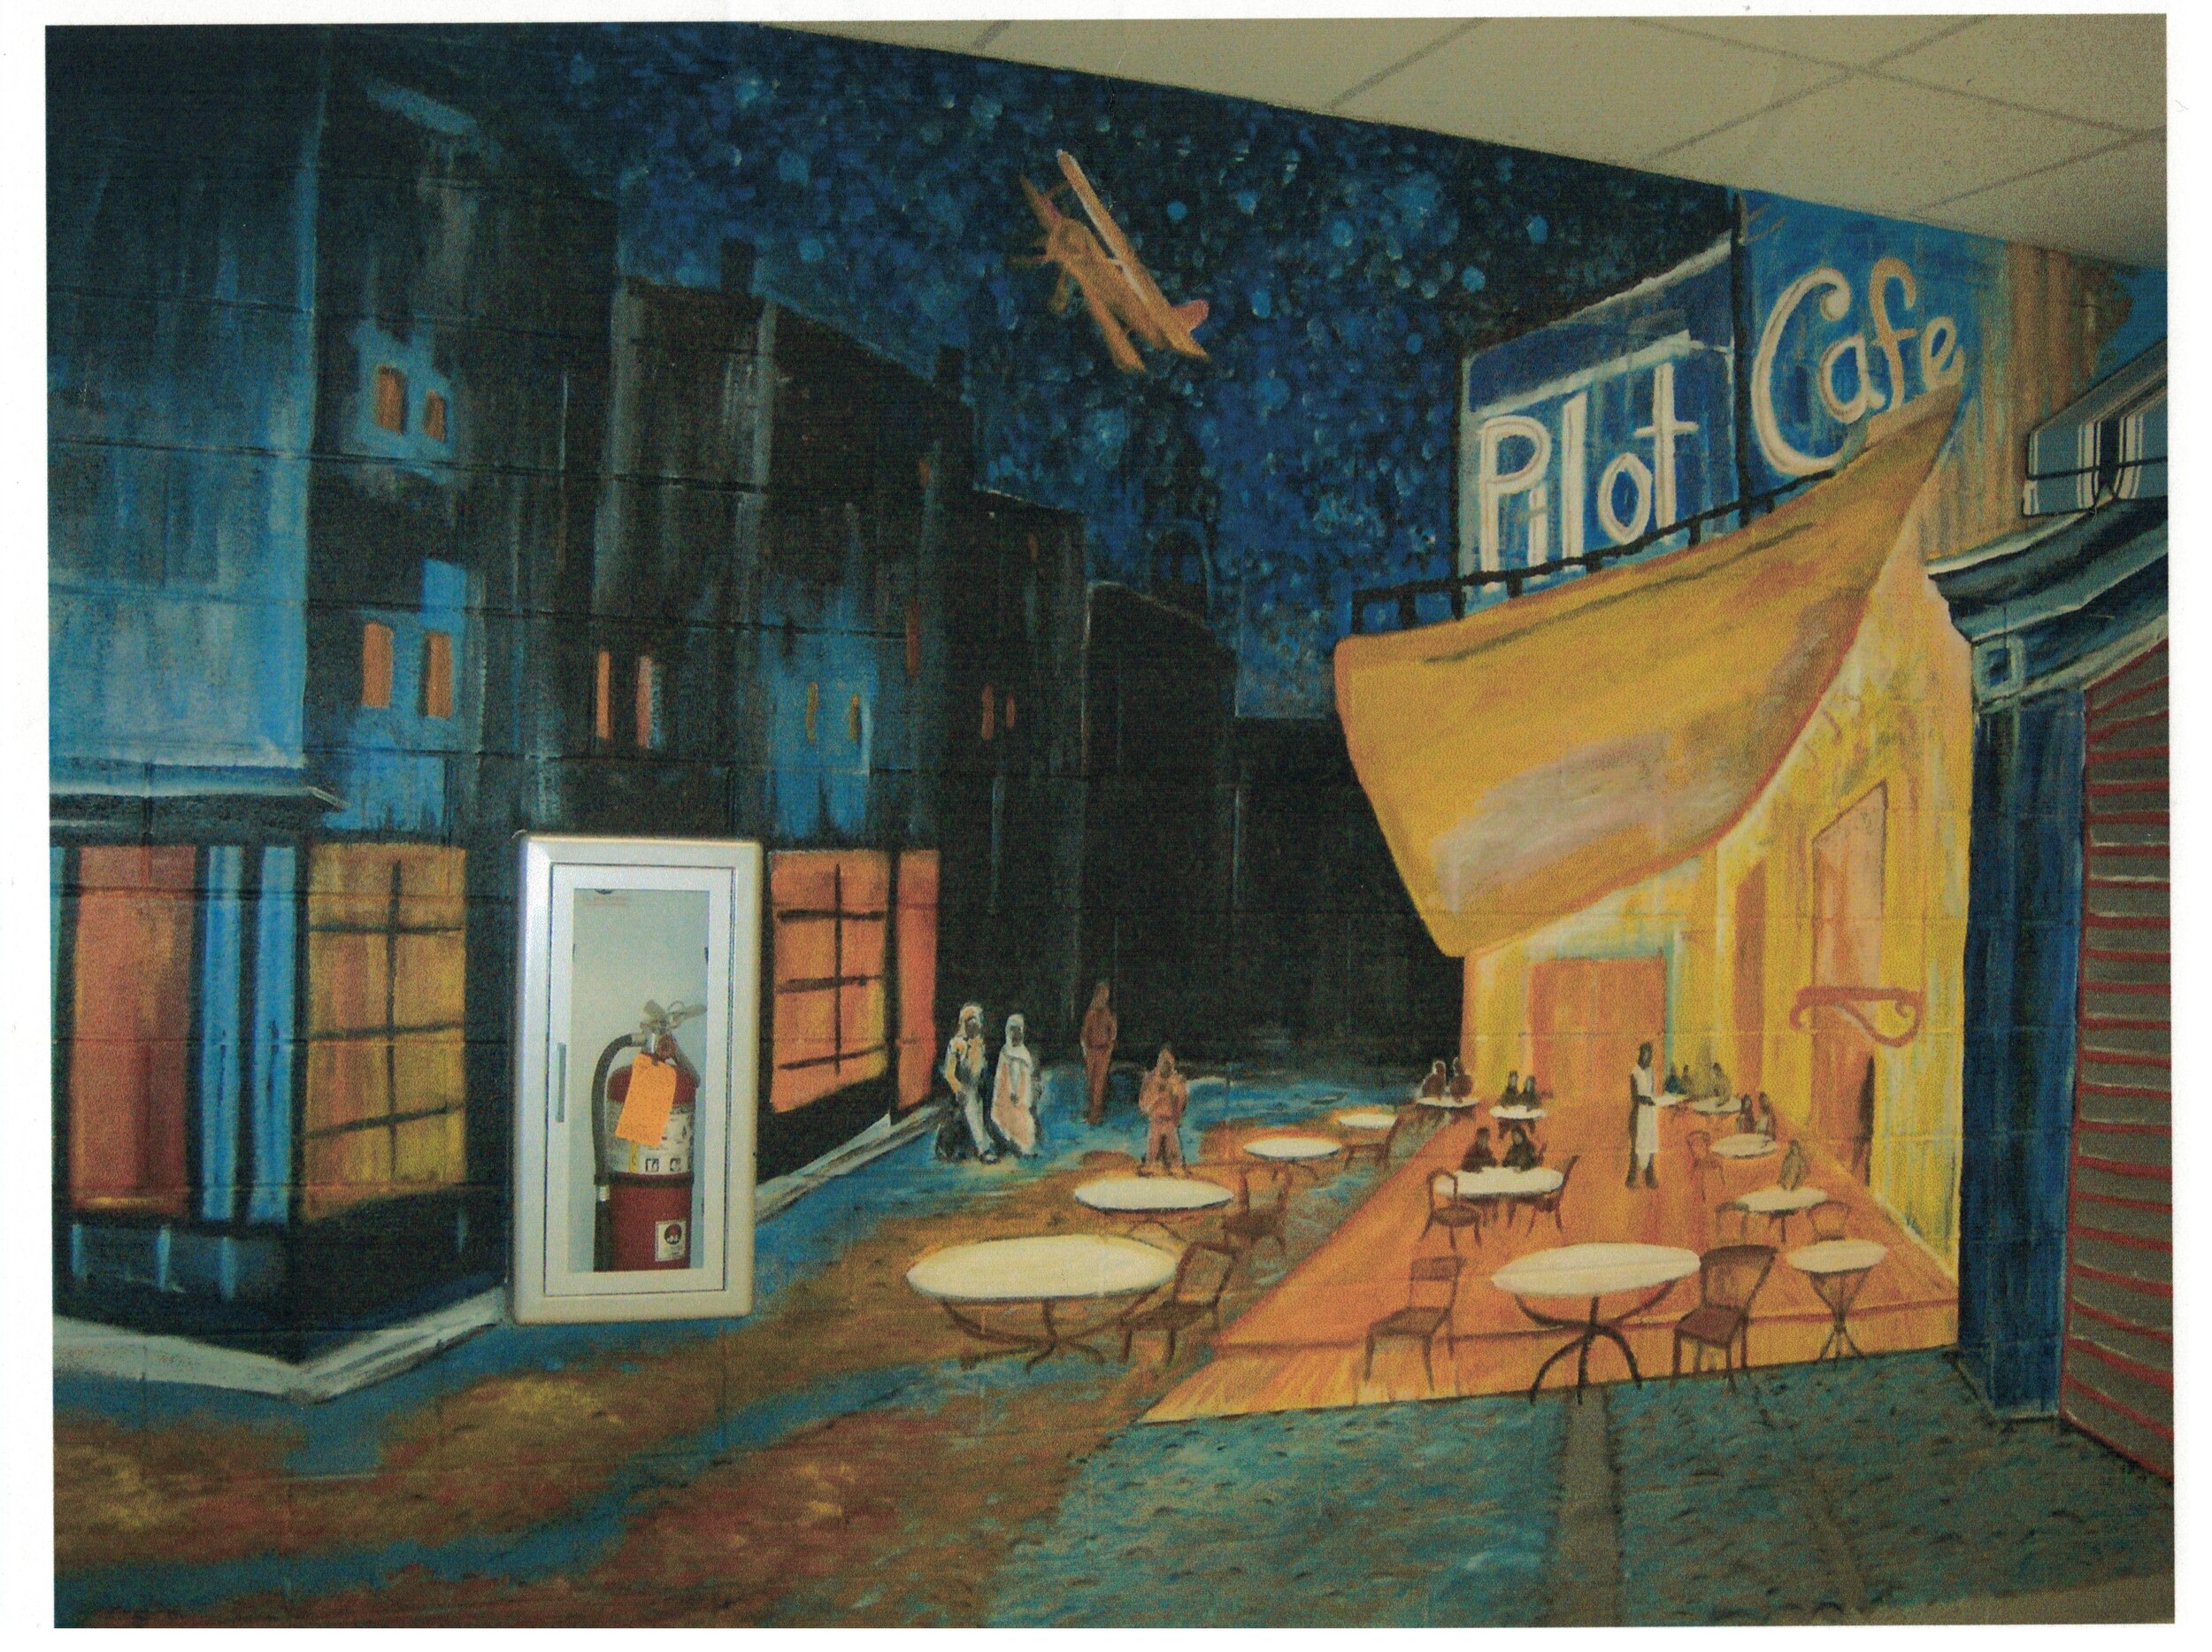 Pilot Cafe Mural